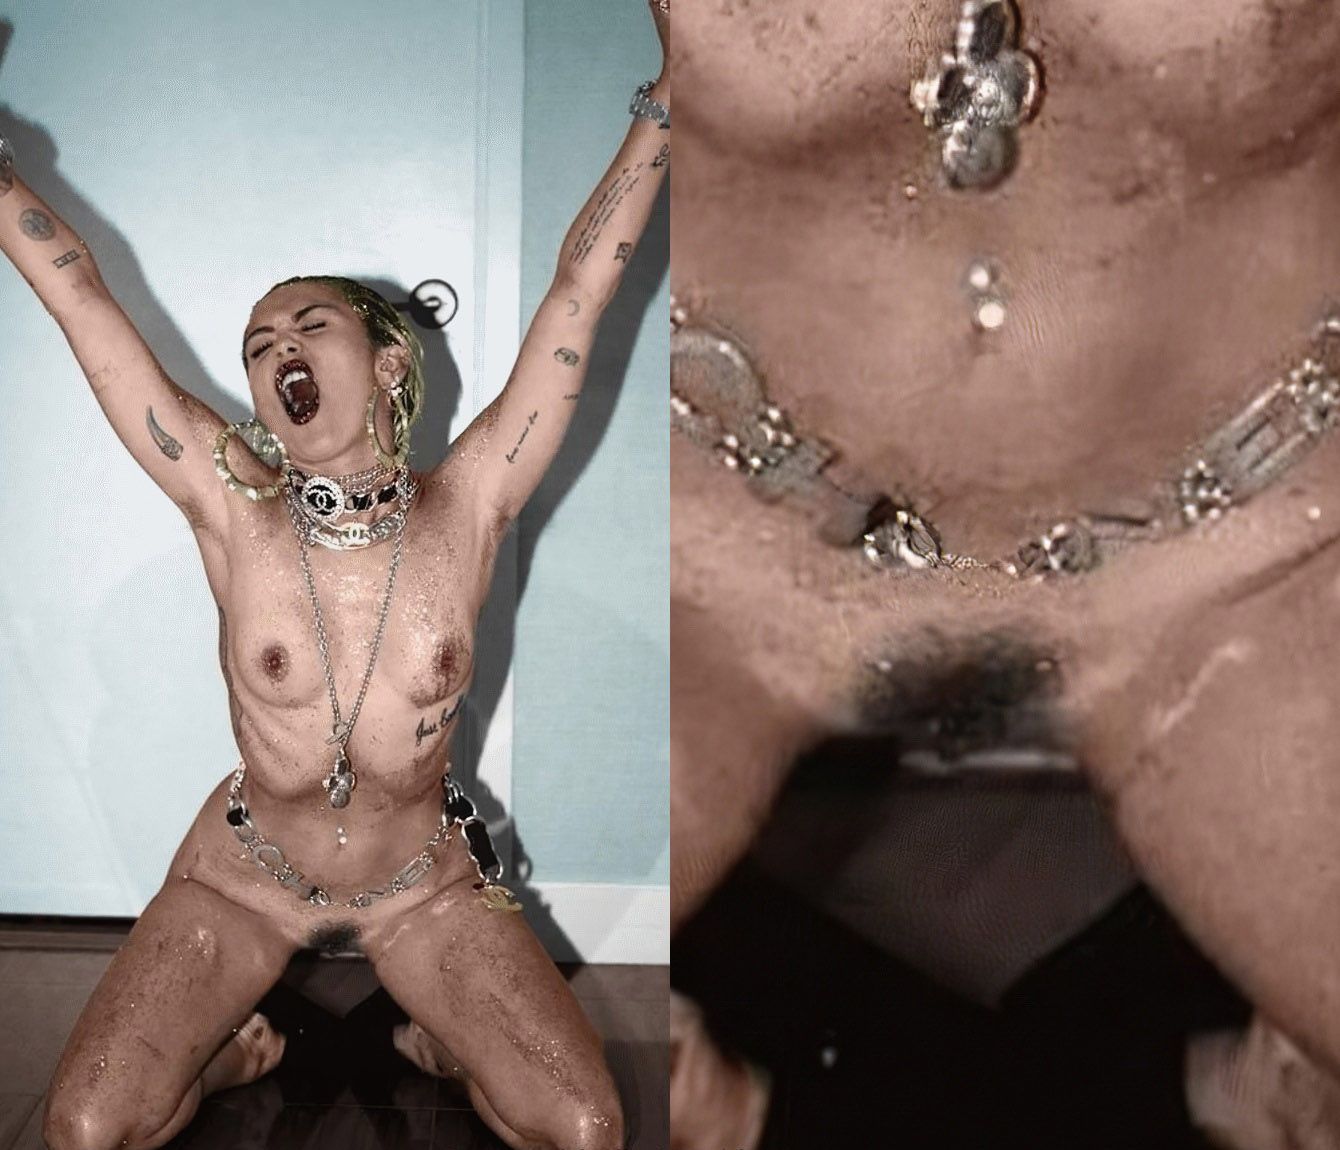 Hack miley cyrus nude photo Miley Cyrus